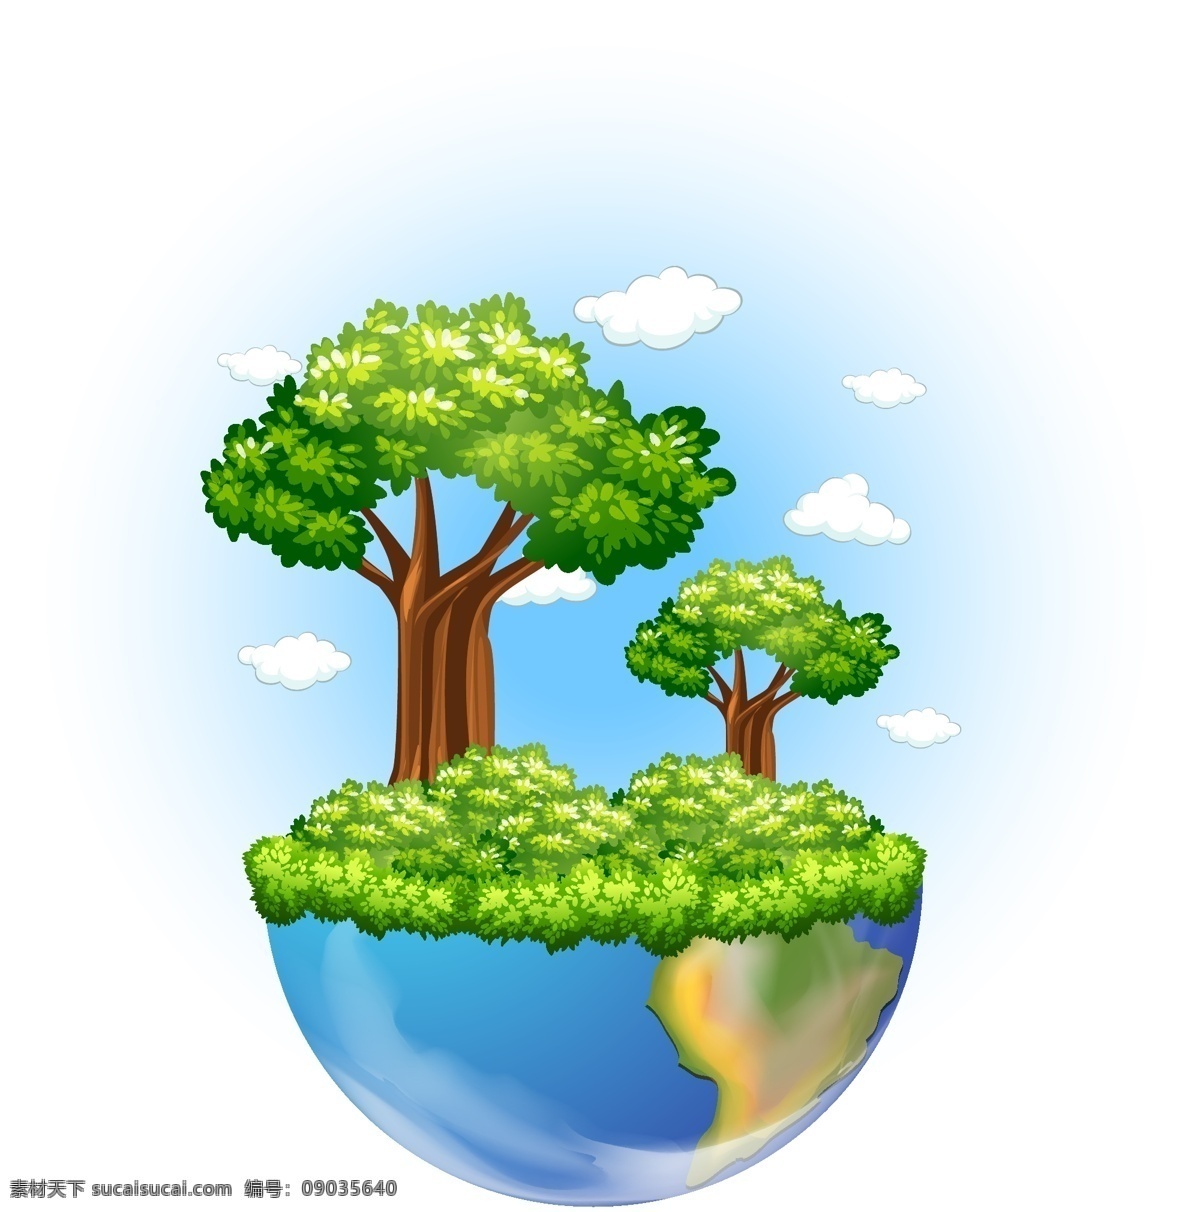 创意 绿色 大树 生长 地球 悬浮 背景 插图 创意绿色大树 地球悬浮 背景插图 写实风格地球 蓝天白云 淘宝背景 矢量图素材 网页素材 矢量图模板 插画素材 卡通素材 唯美图片